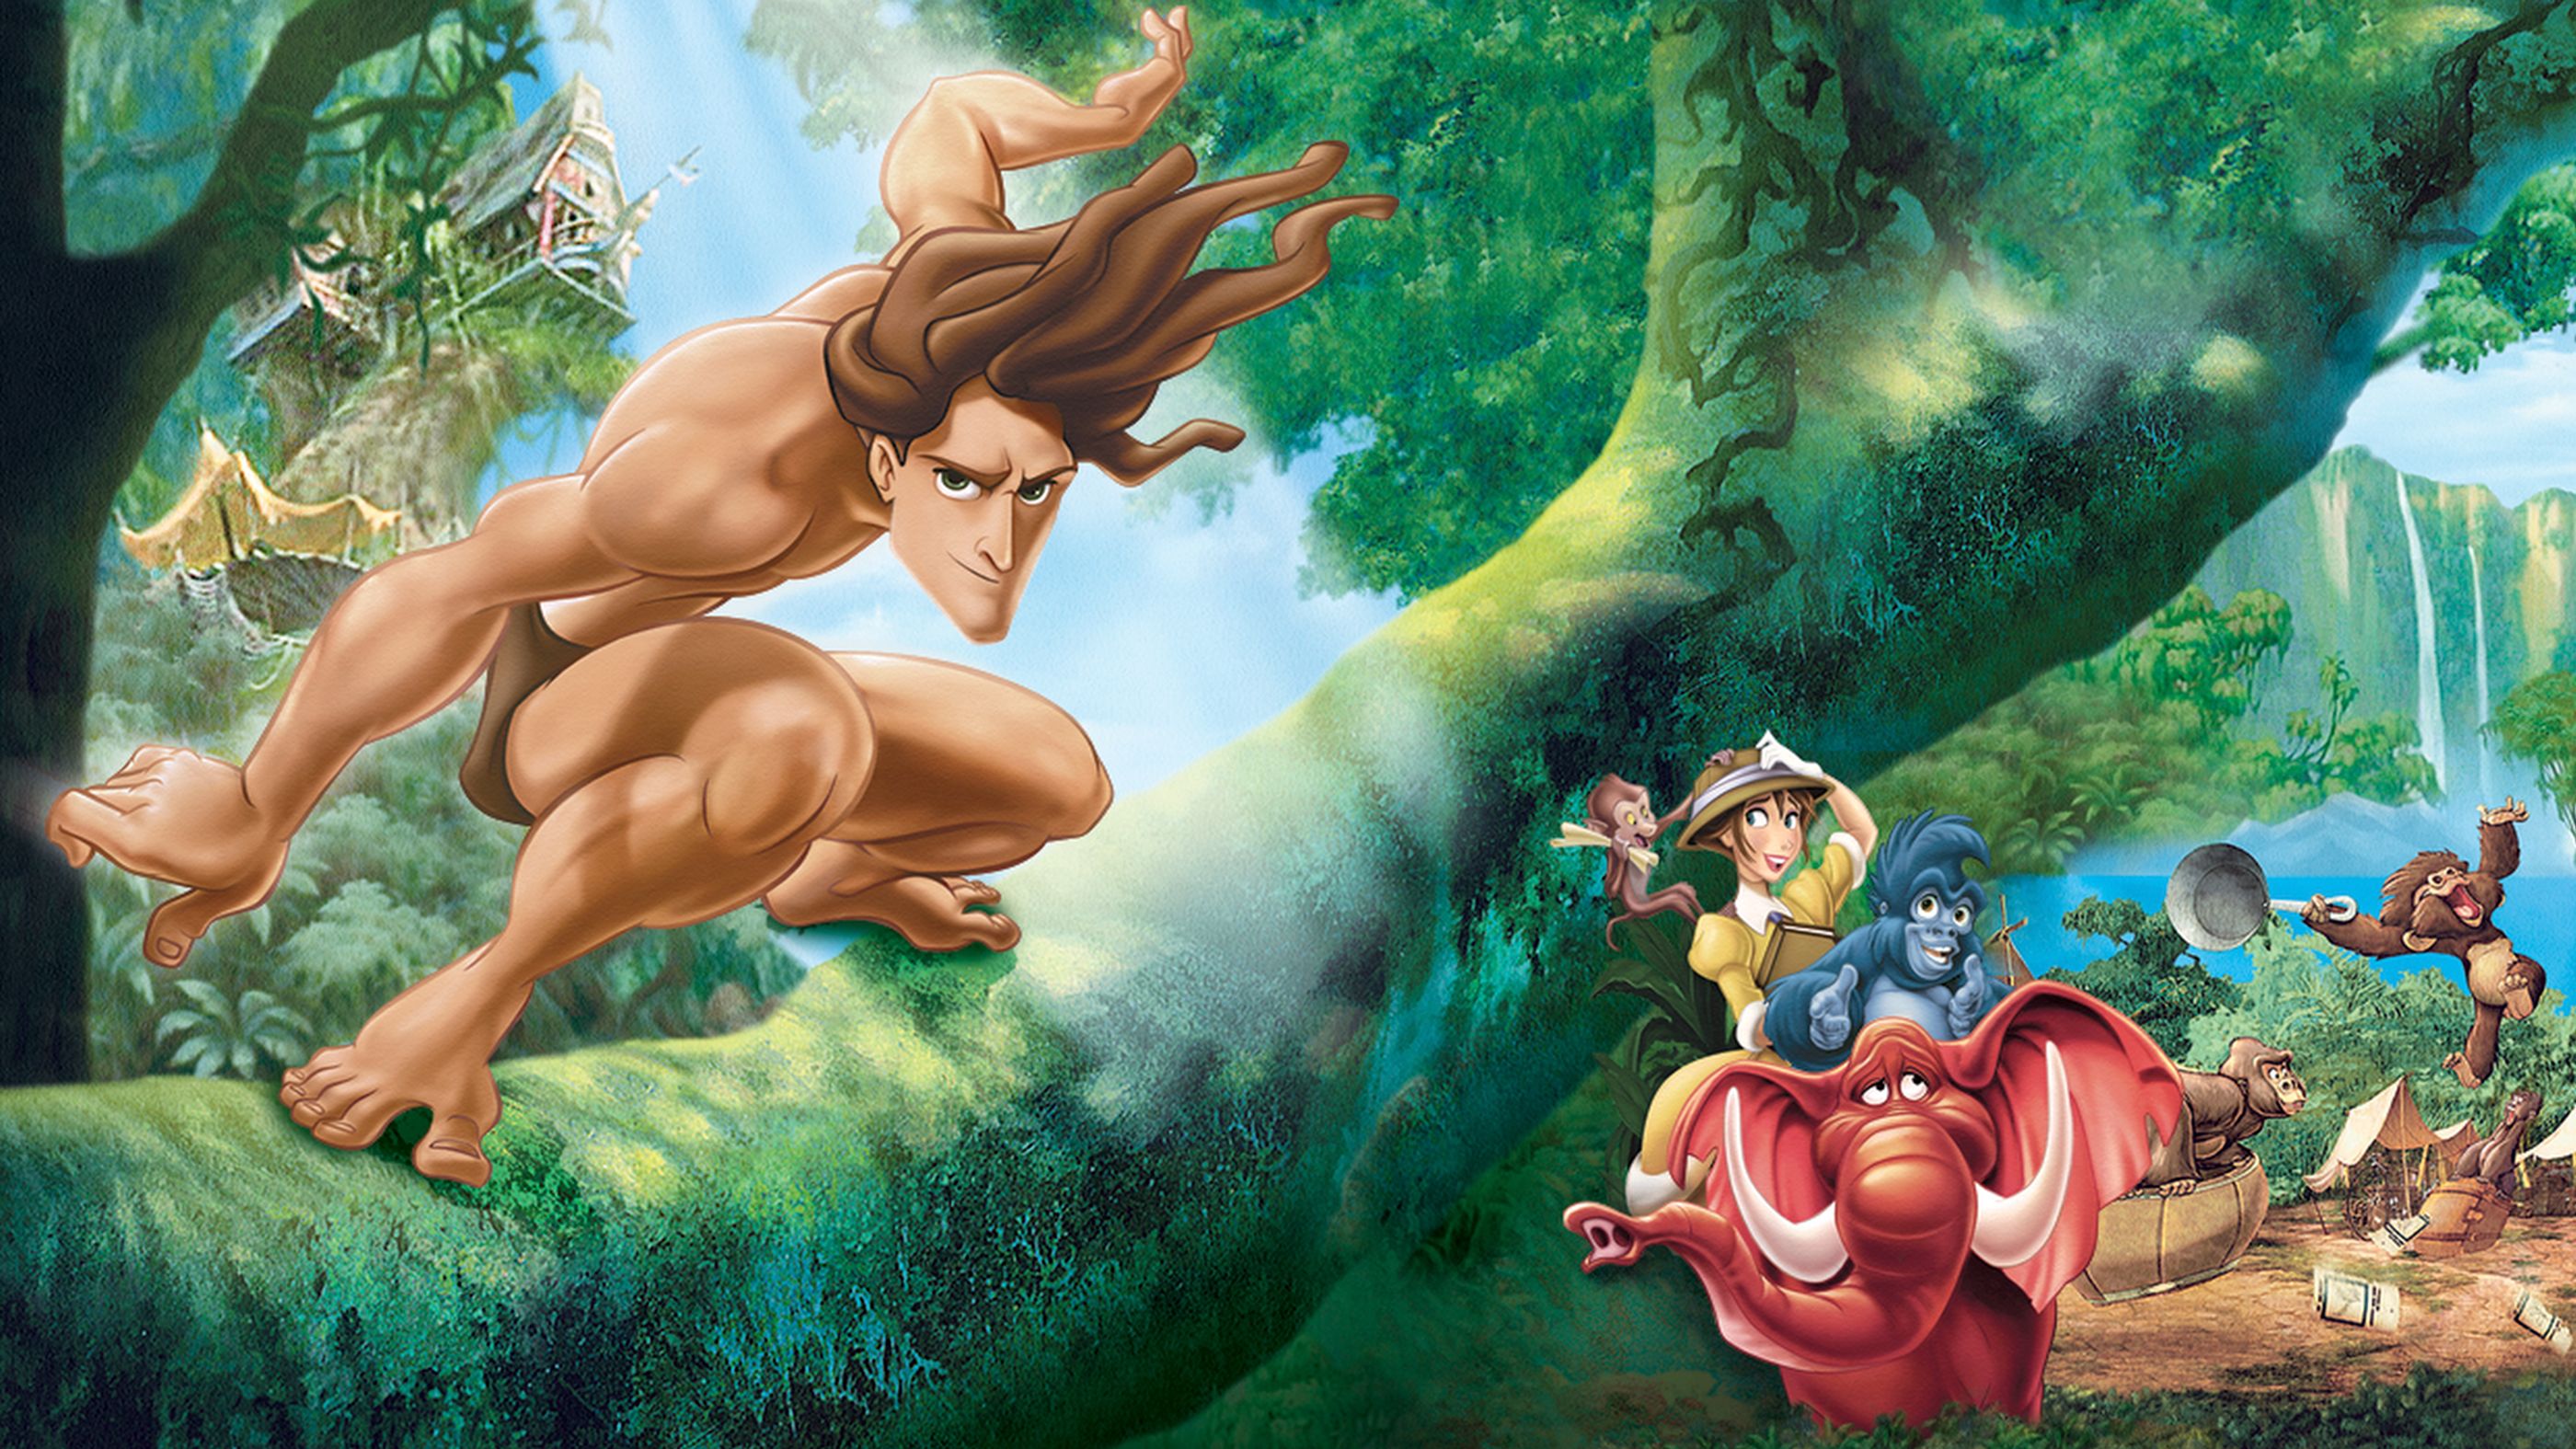 2800px x 1575px - Tarzan | Full Movie | Movies Anywhere